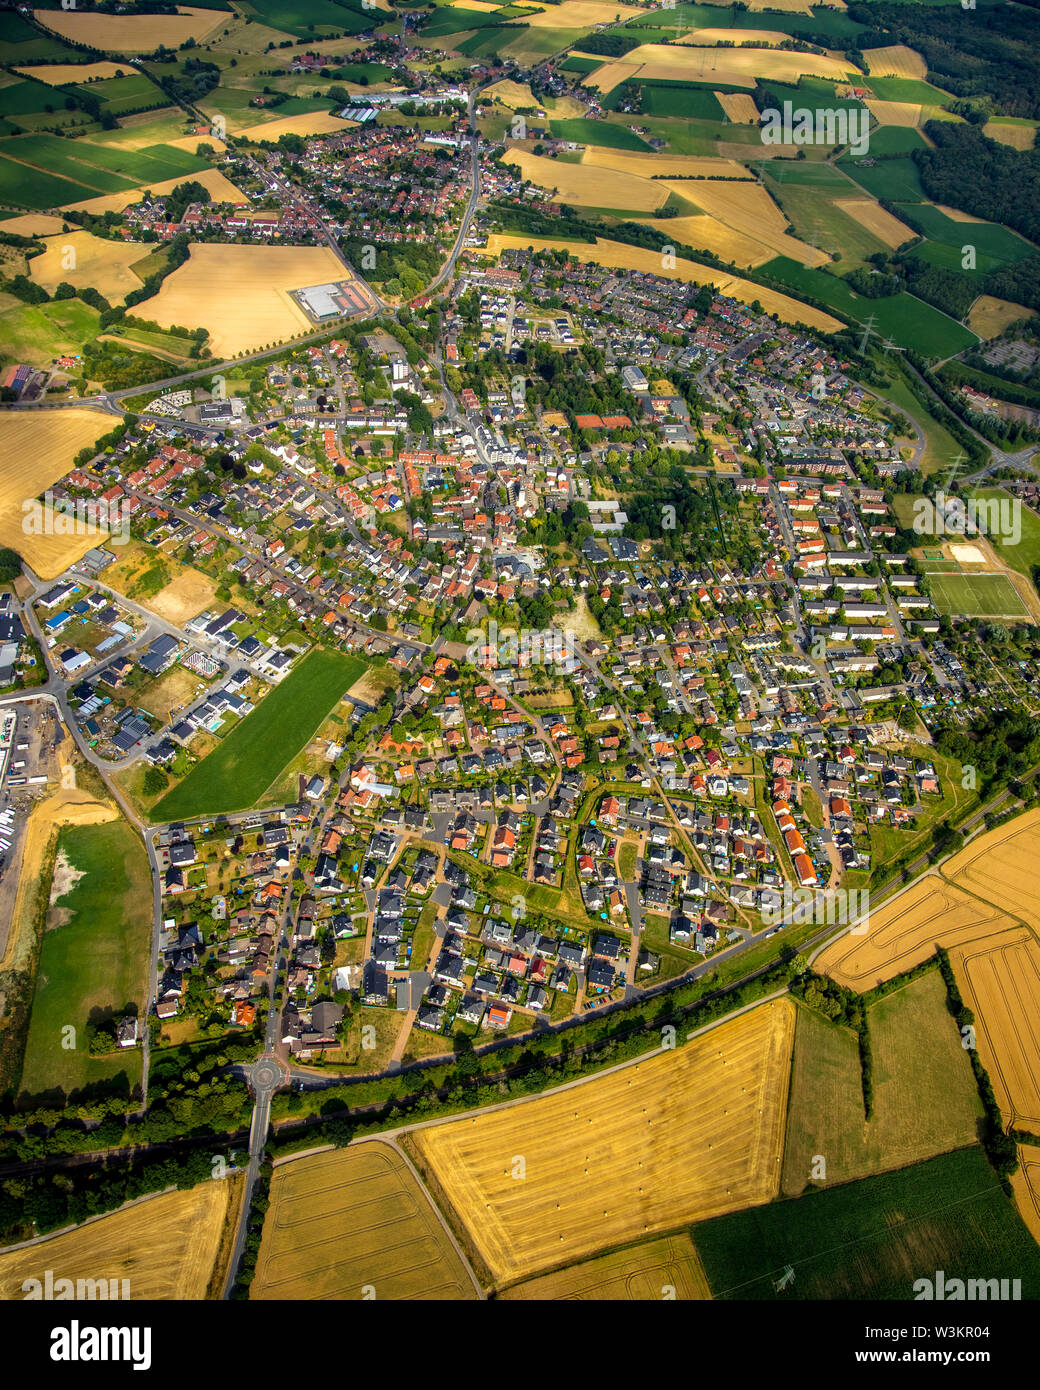 Vista aérea del distrito Bork en Selm en la región del Ruhr, en el estado federal de Renania del Norte-Westfalia en Alemania., Selm, área de Ruhr, al norte Rhine-Westph Foto de stock